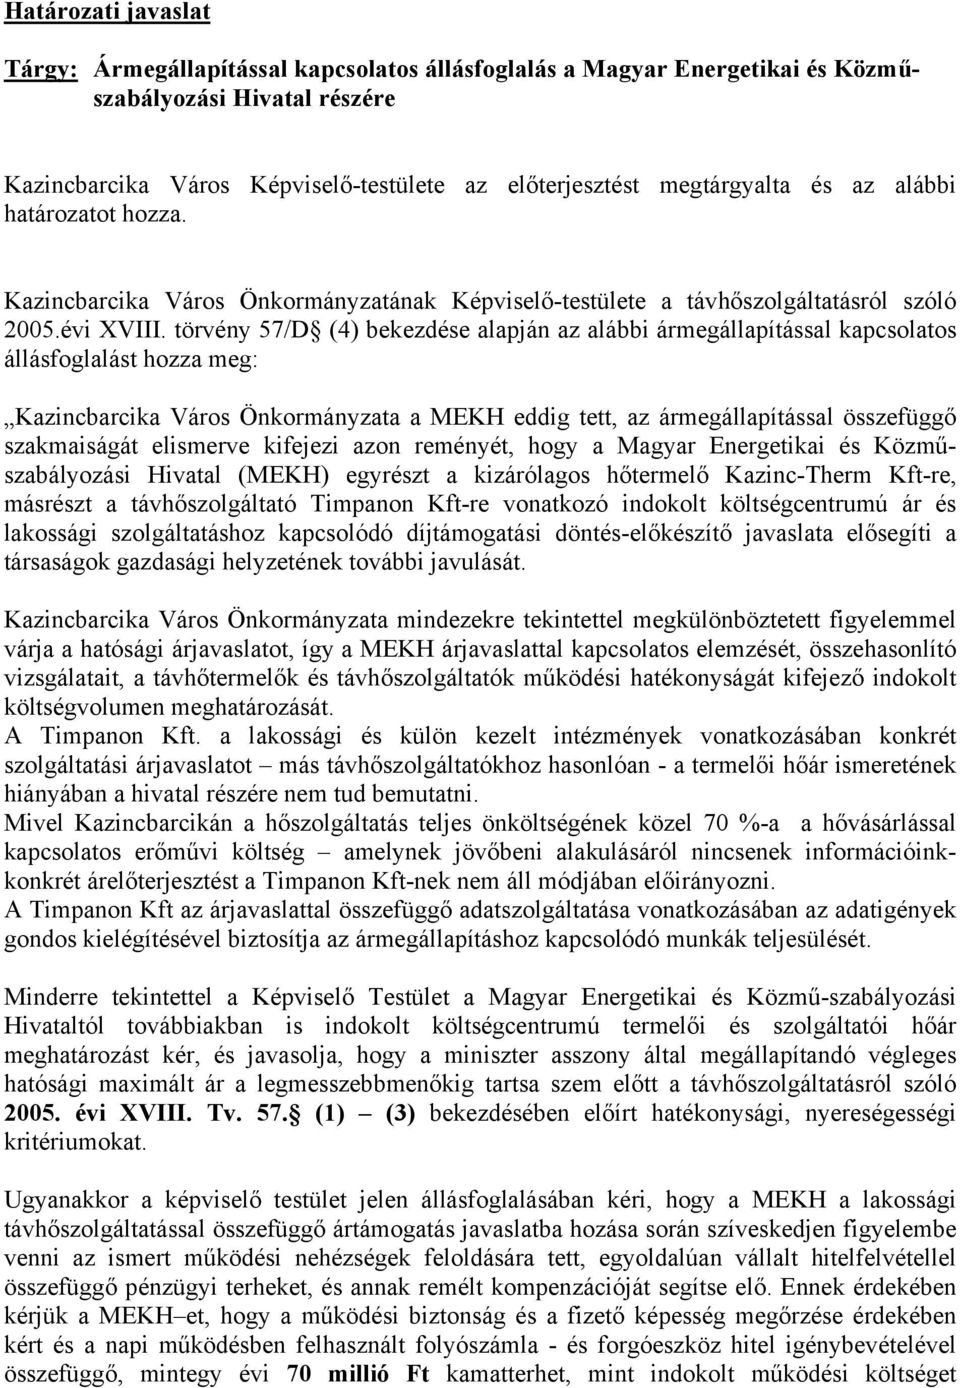 törvény 57/D (4) bekezdése alapján az alábbi ármegállapítással kapcsolatos állásfoglalást hozza meg: Kazincbarcika Város Önkormányzata a MEKH eddig tett, az ármegállapítással összefüggő szakmaiságát